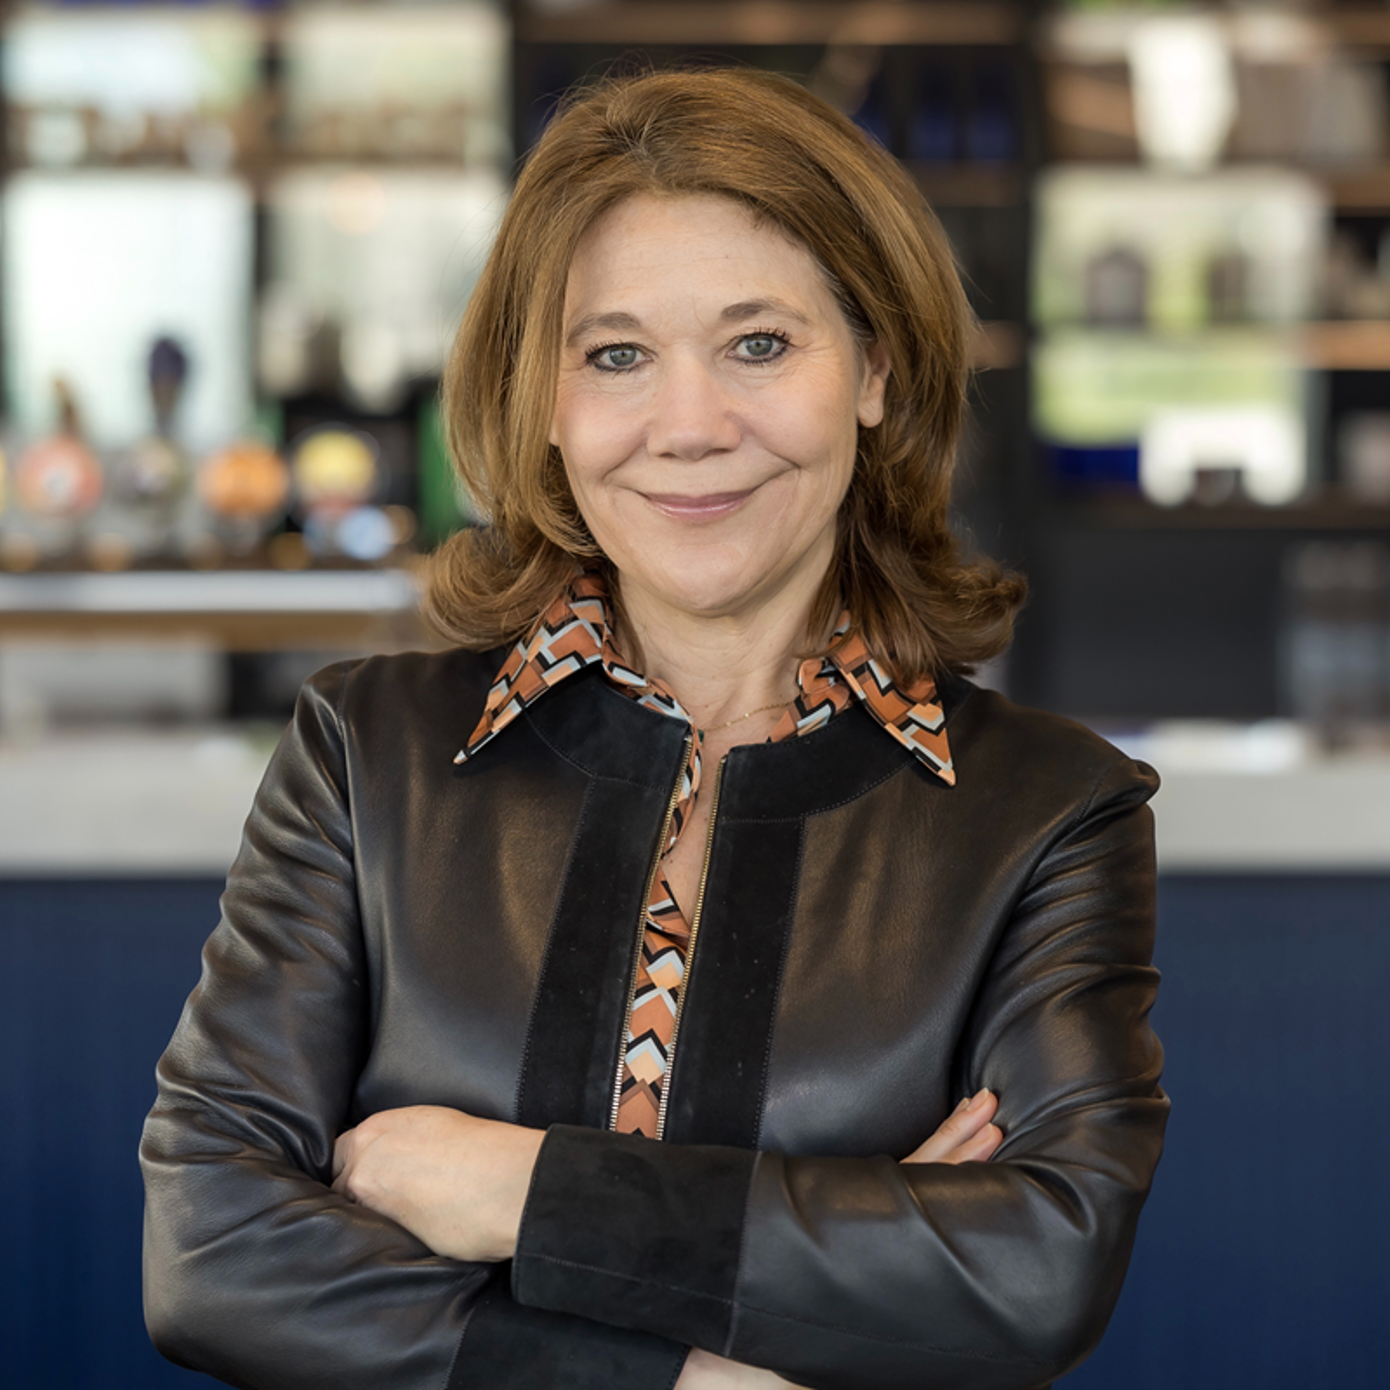 Agnès d'Anthonay, Directrice Corporate Affairs & Présidente Fondation Kronenbourg